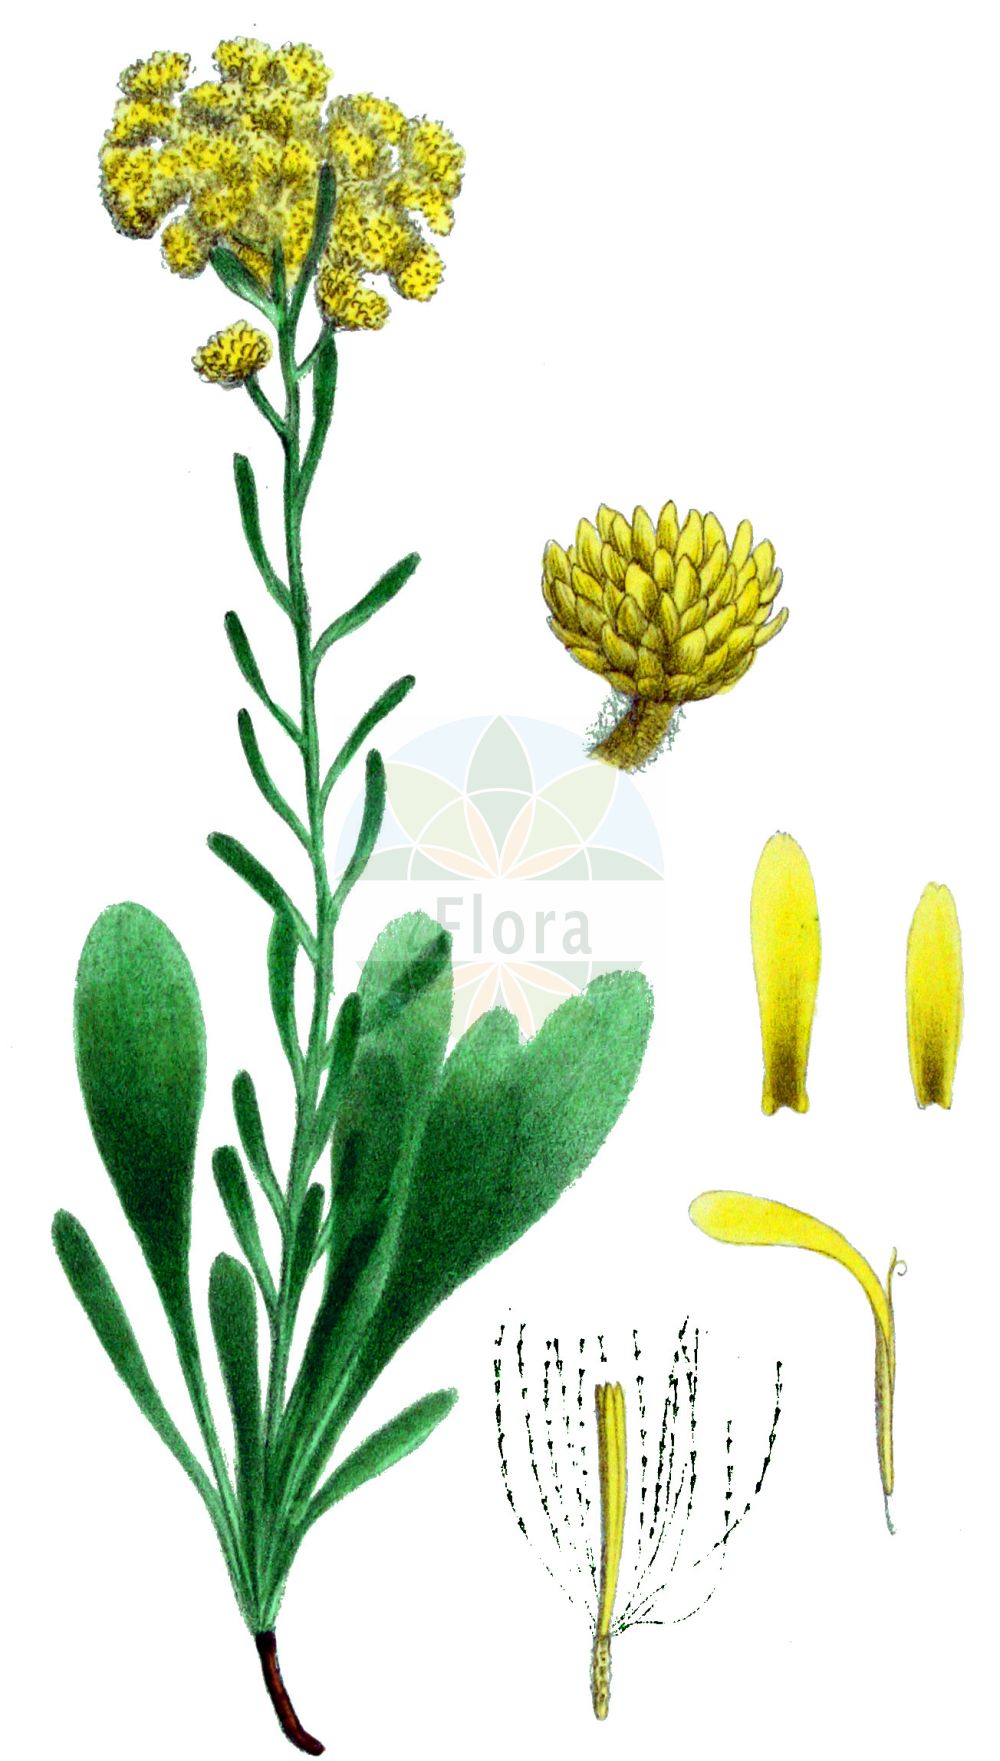 Historische Abbildung von Helichrysum arenarium (Sand-Strohblume - Strawflower). Das Bild zeigt Blatt, Bluete, Frucht und Same. ---- Historical Drawing of Helichrysum arenarium (Sand-Strohblume - Strawflower). The image is showing leaf, flower, fruit and seed.(Helichrysum arenarium,Sand-Strohblume,Strawflower,Gnaphalium arenarium,Helichrysum arenarium,Sand-Strohblume,Strawflower,Helichrysum,Strohblume,Strawflower,Asteraceae,Korbblütengewächse,Daisy family,Blatt,Bluete,Frucht,Same,leaf,flower,fruit,seed,Kops (1800-1934))